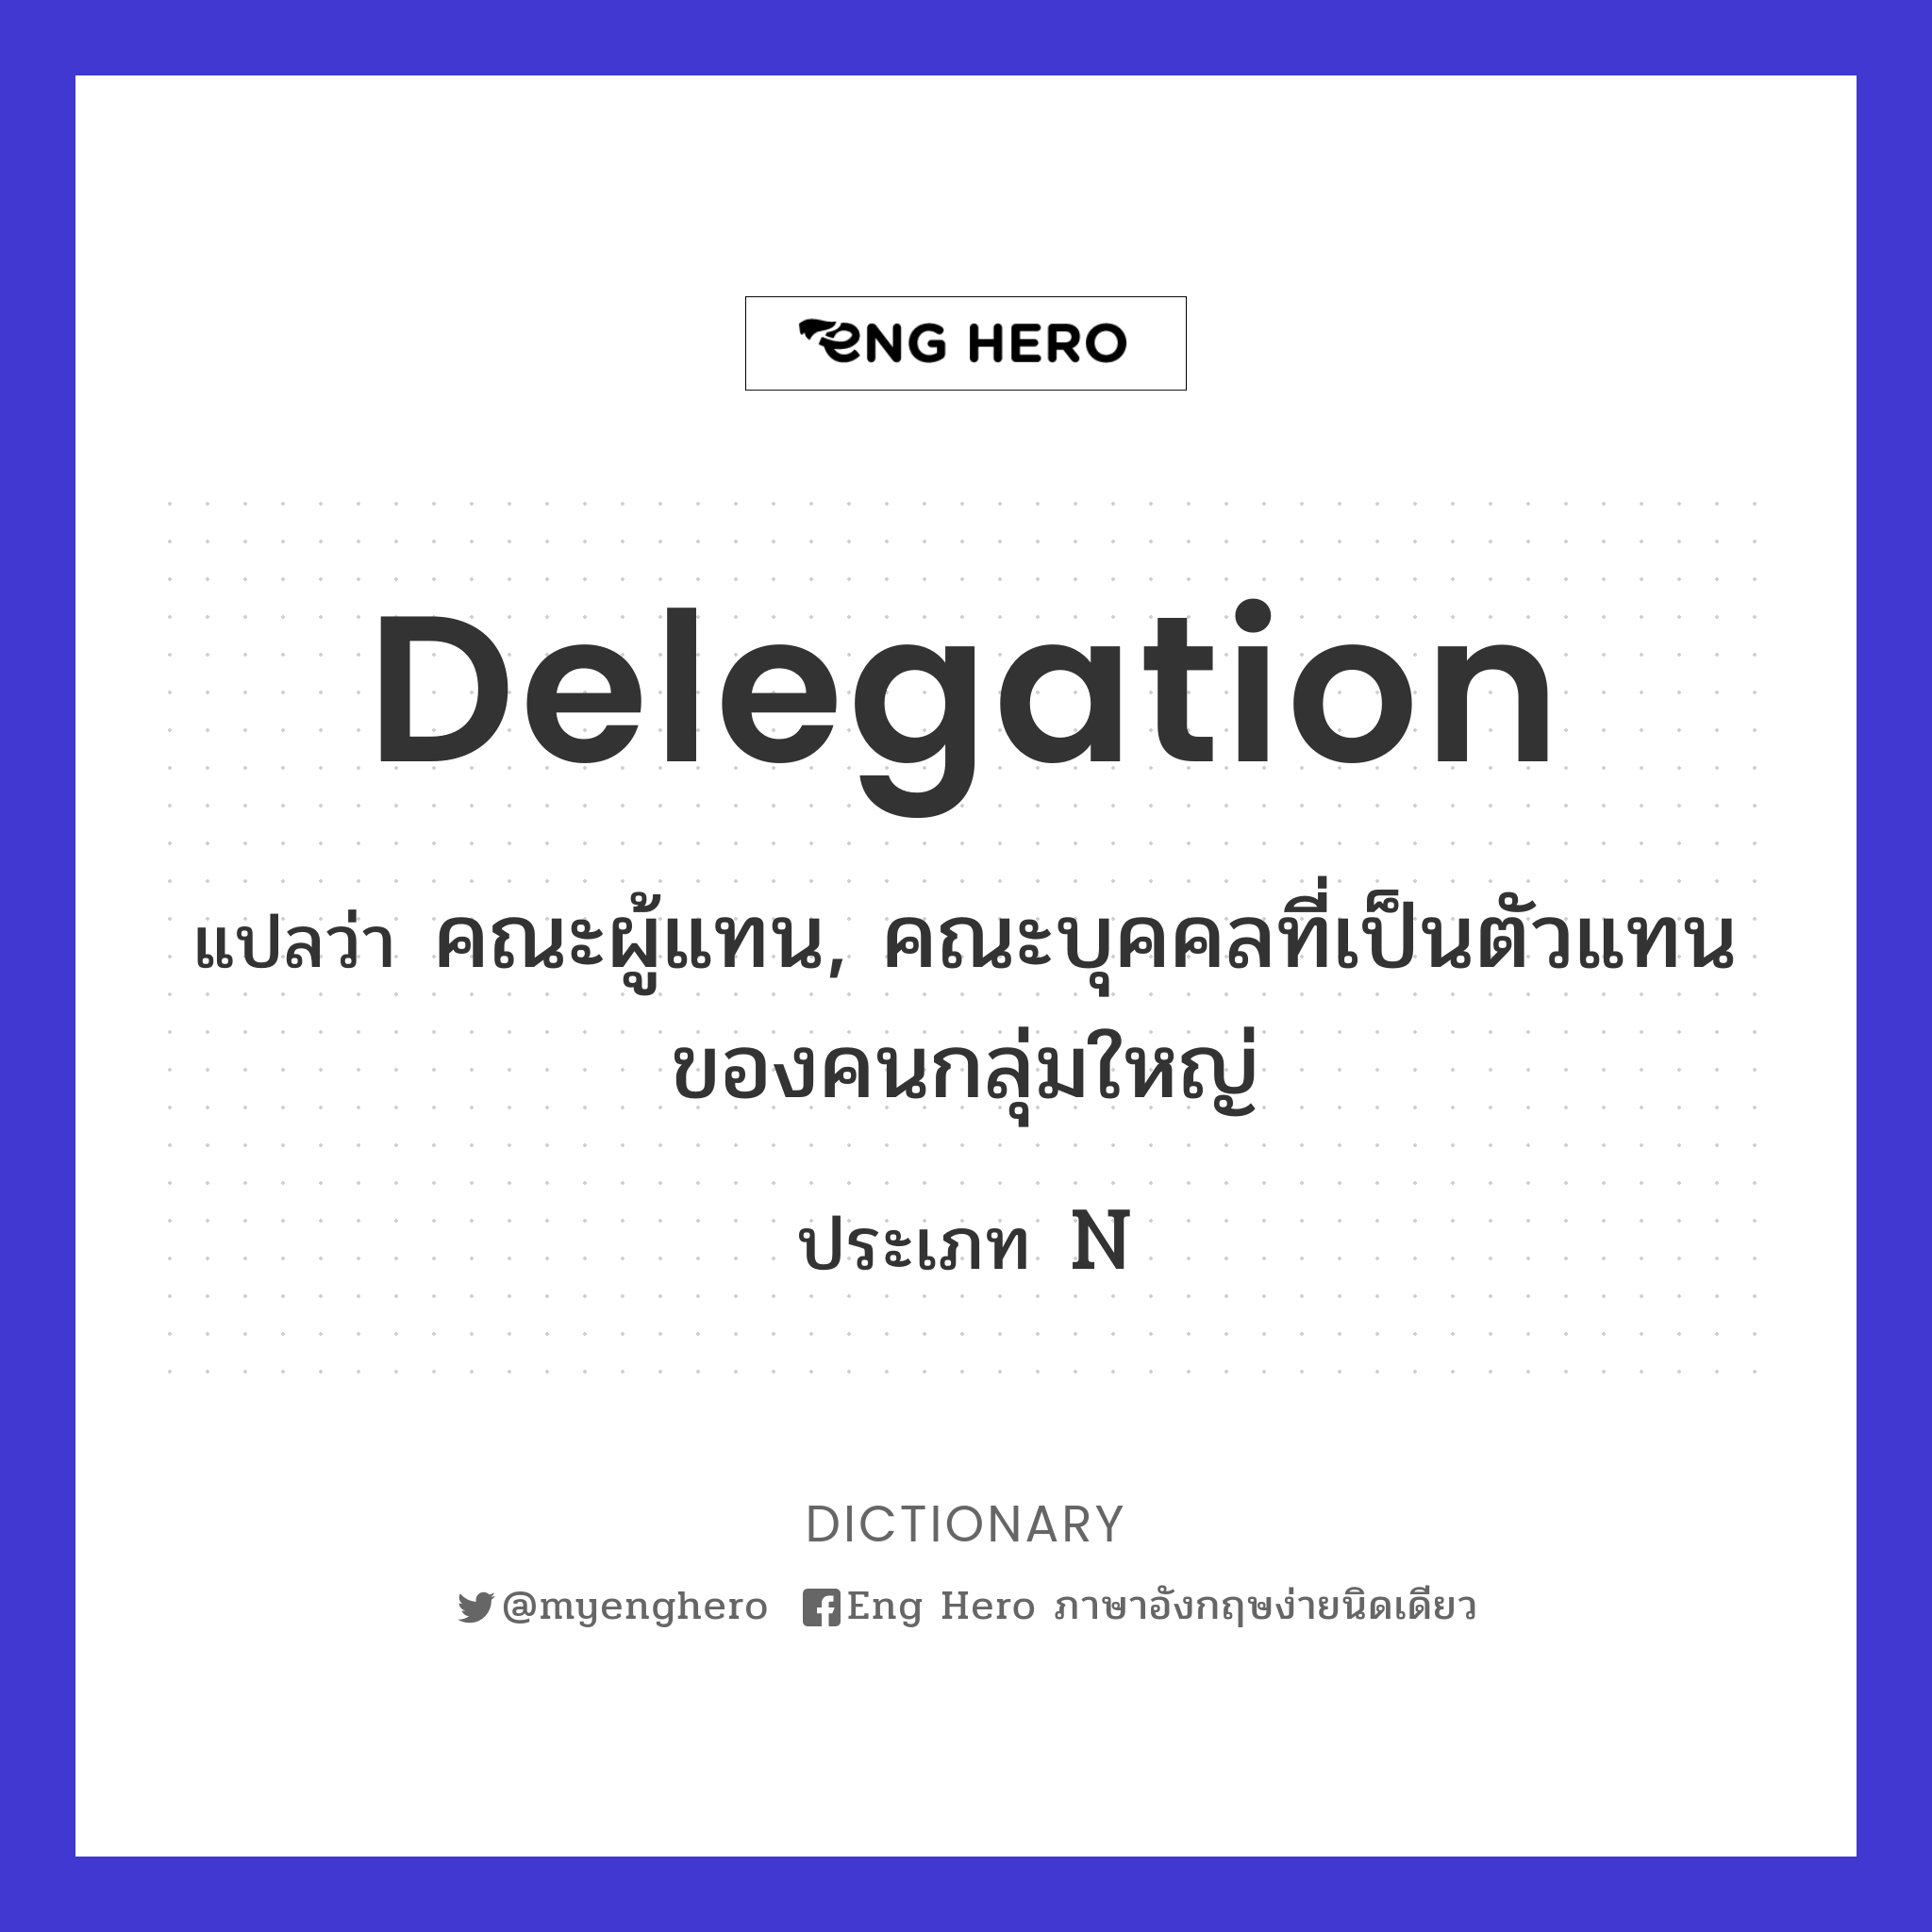 delegation